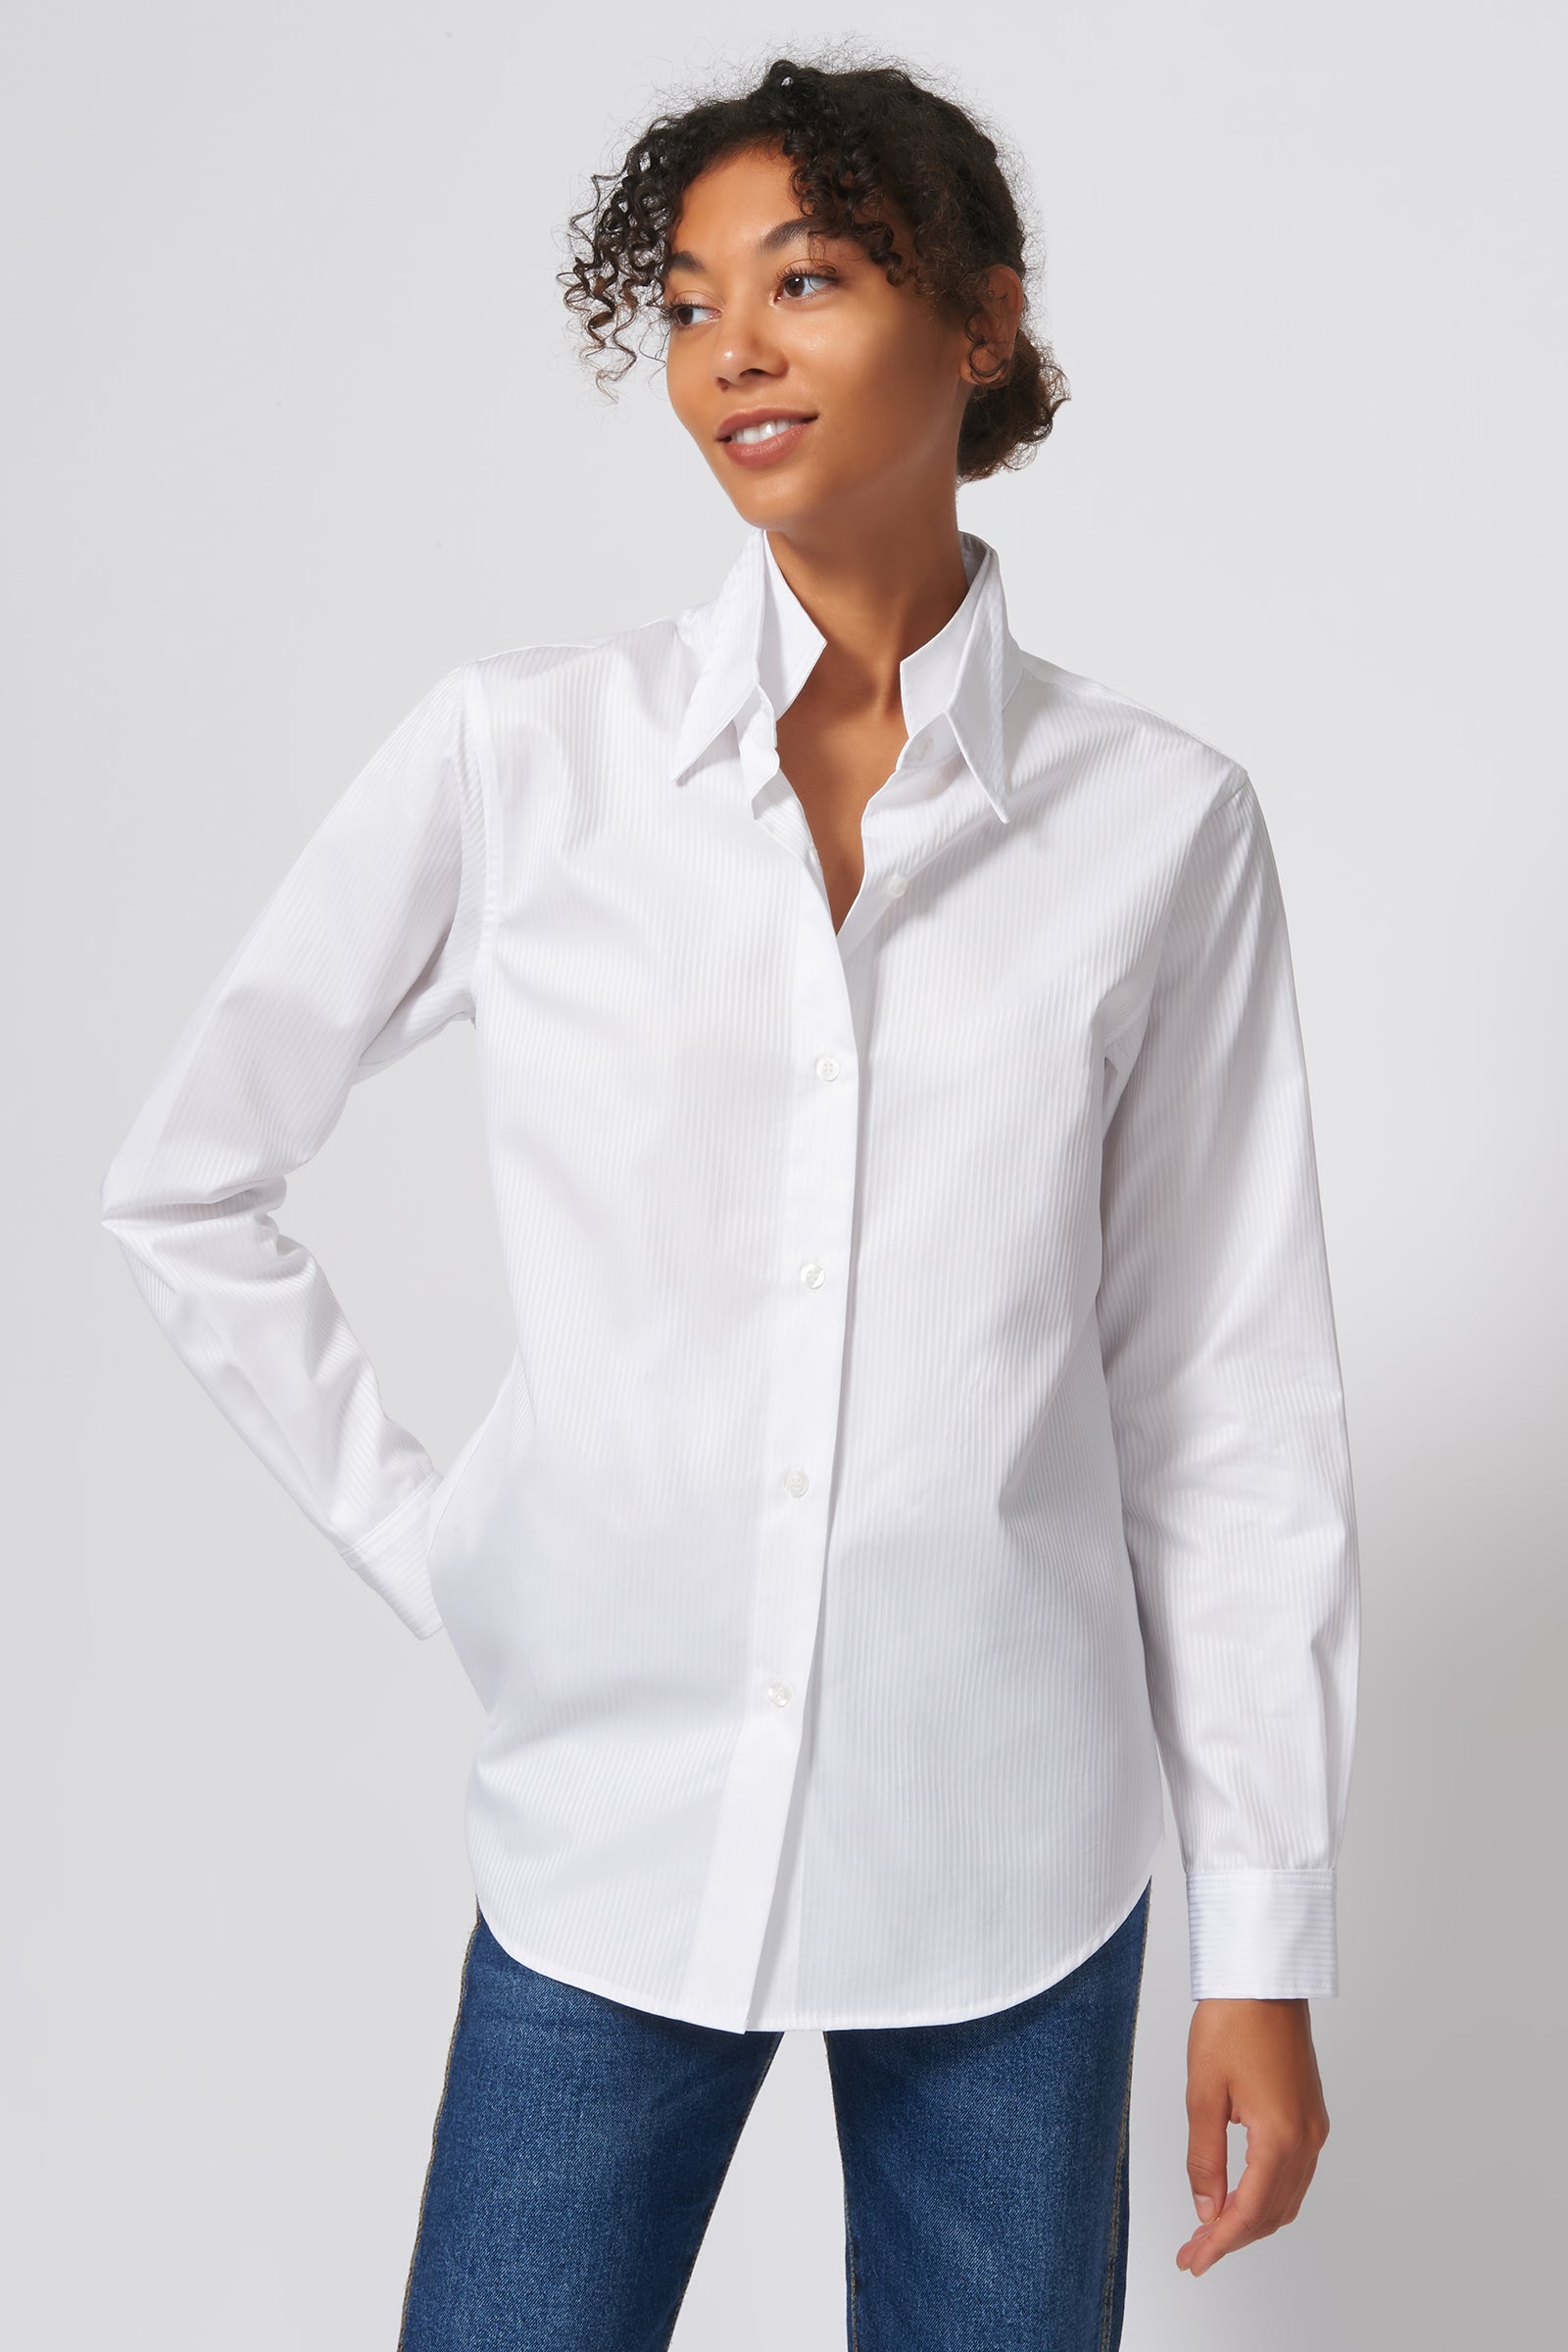 Double Collar Shirt - White Satin Stripe